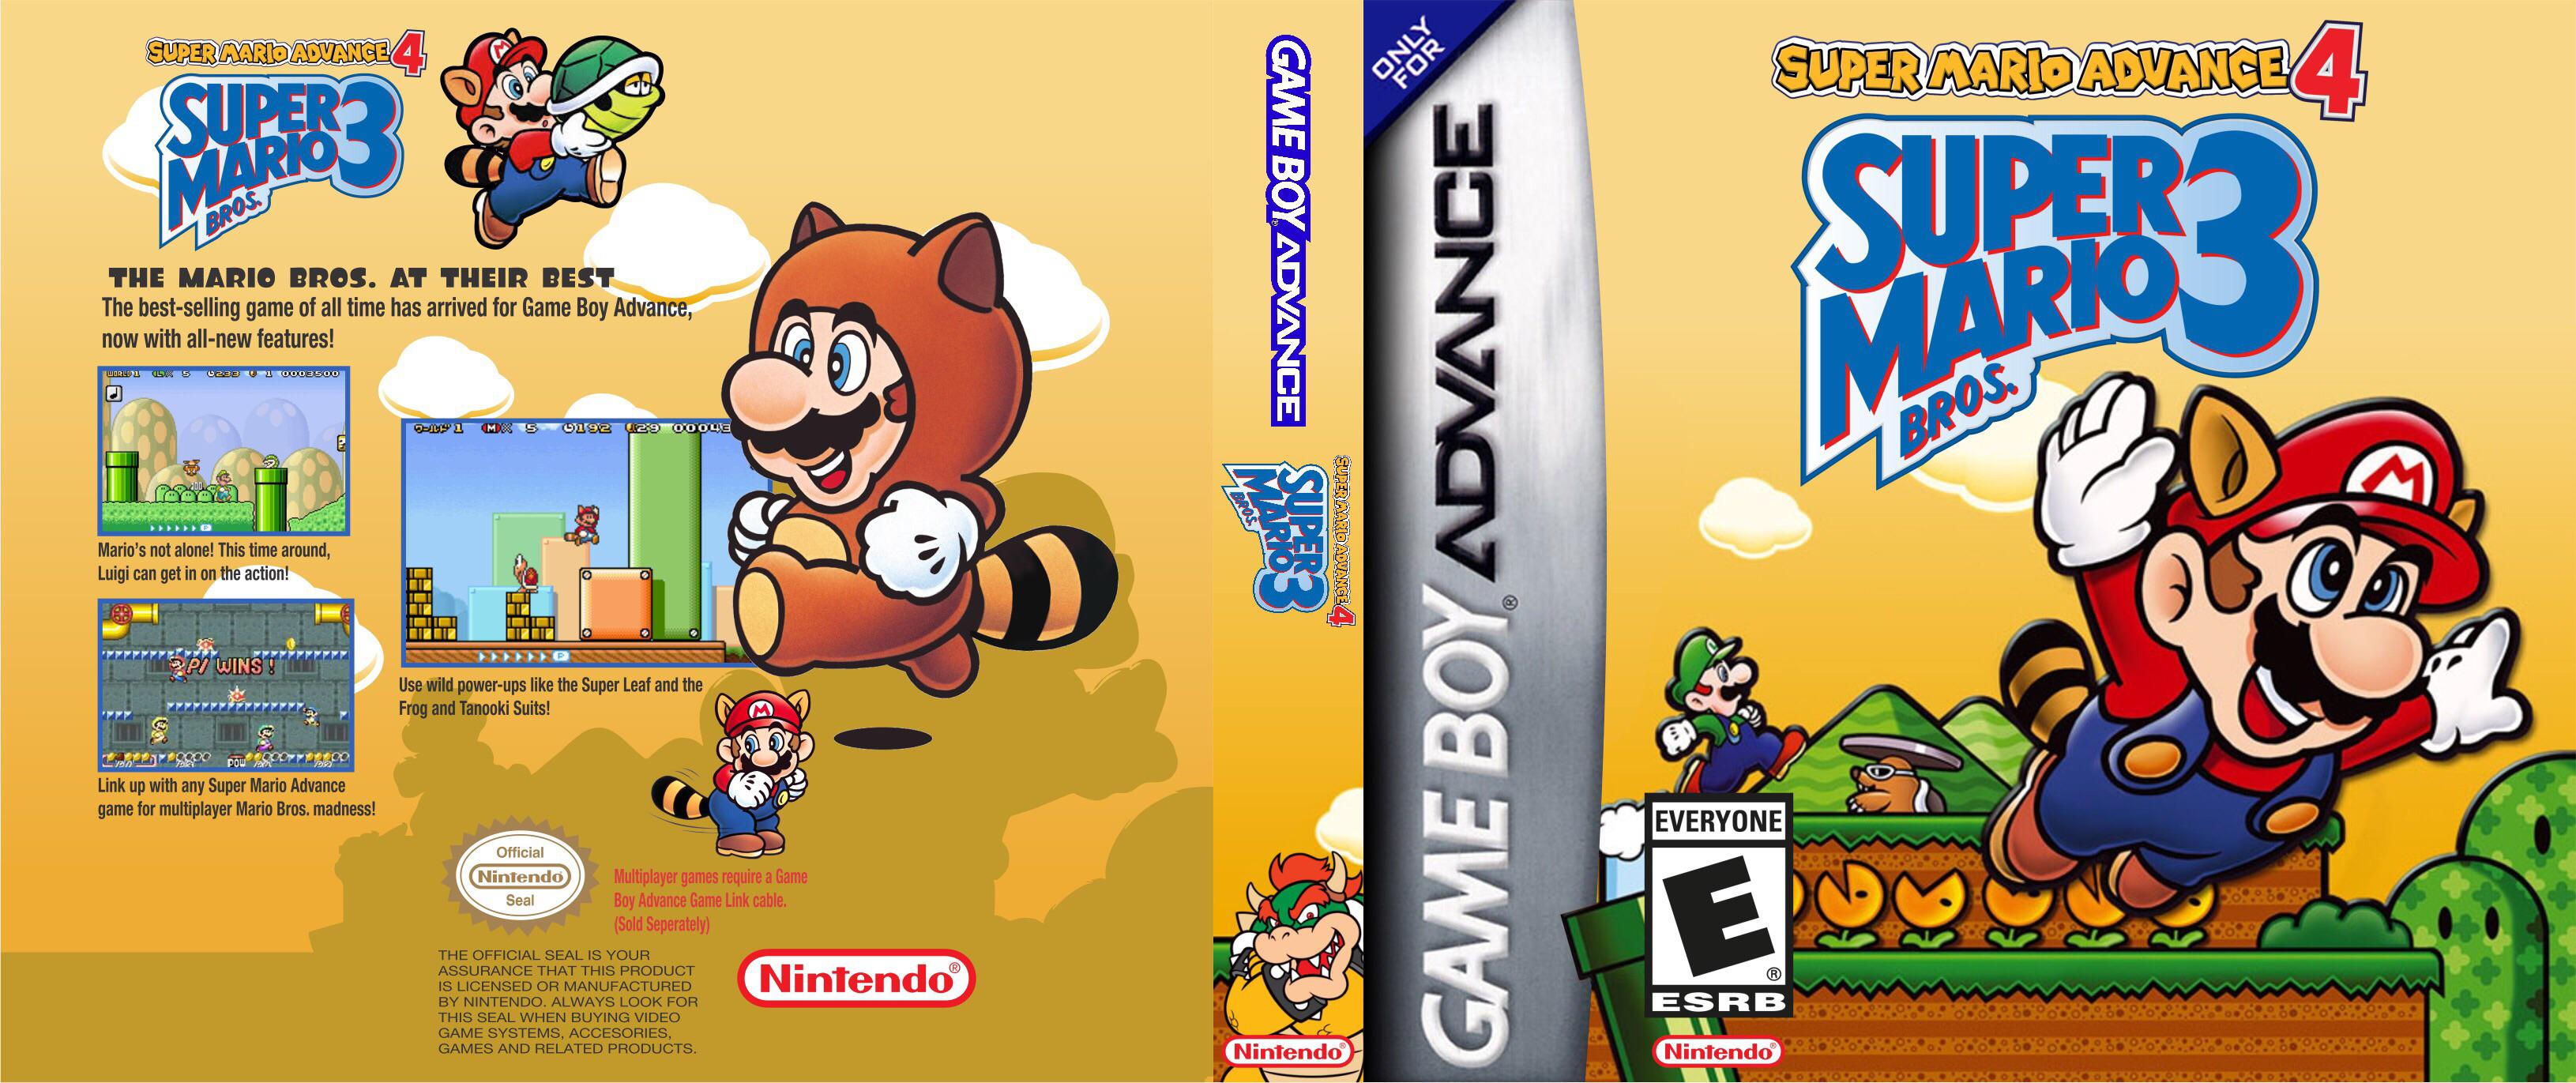 Super Mario Advance 2 Differences